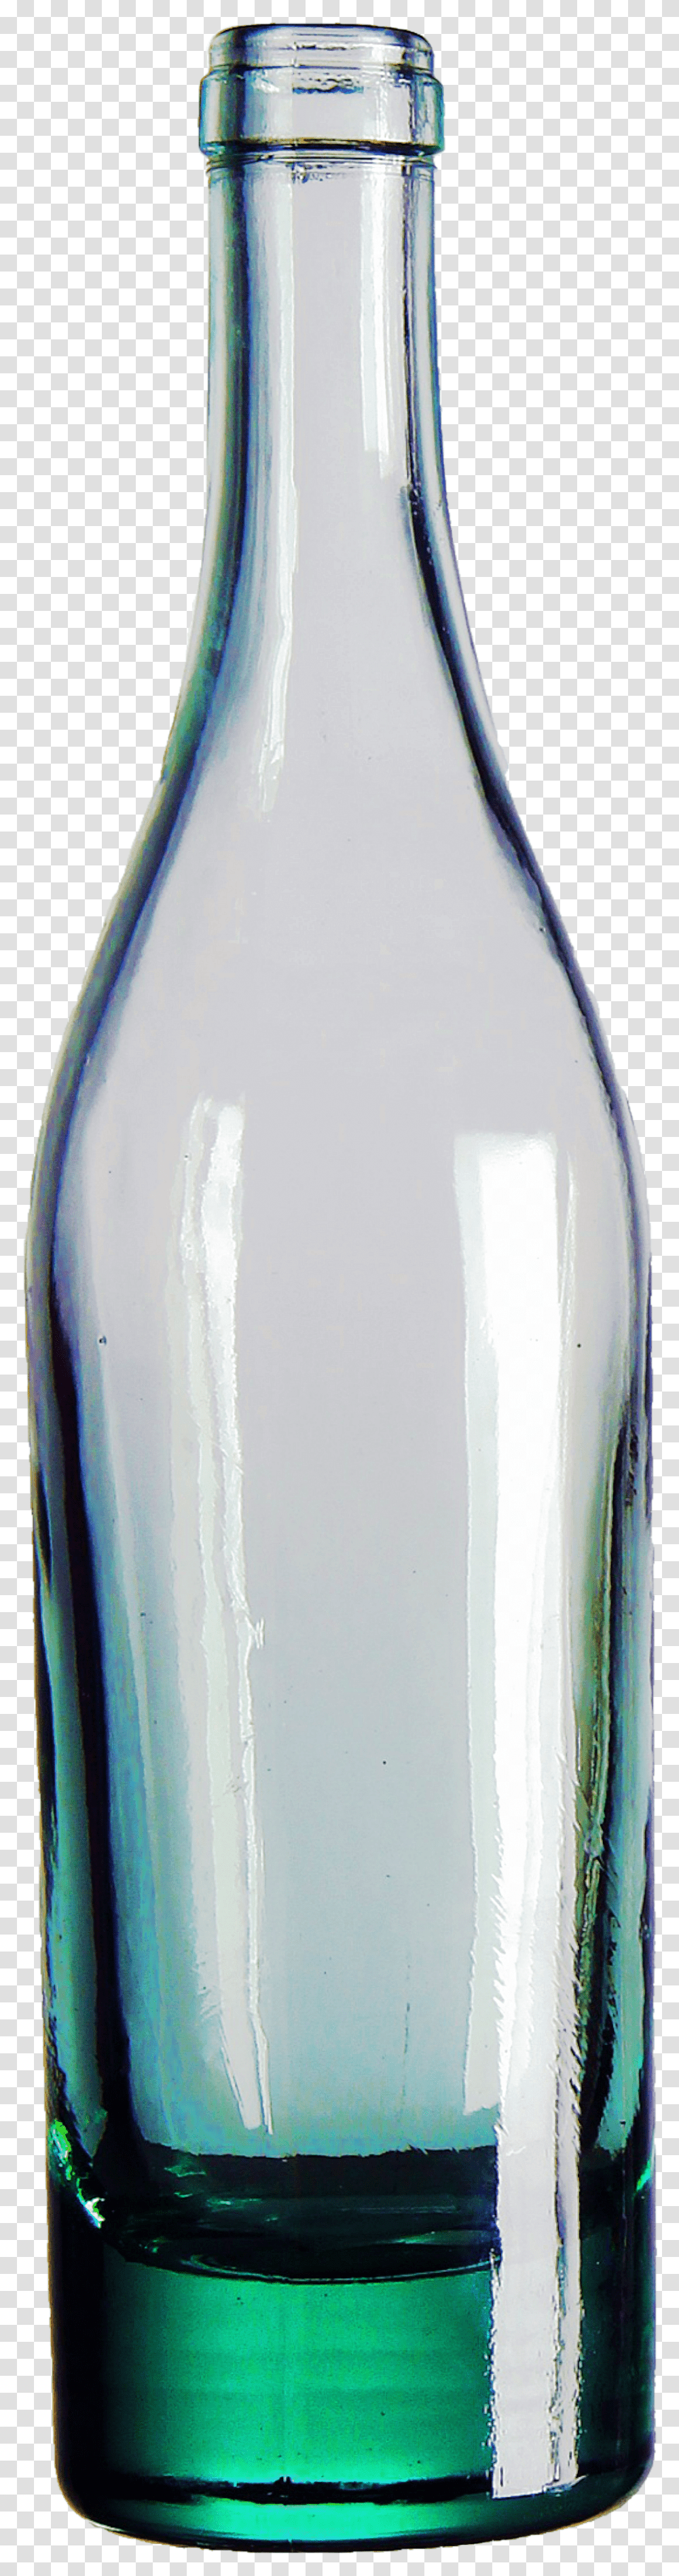 Clear Glass Bottle Glass Bottle Reflection, Beverage, Drink, Jar, Goblet Transparent Png